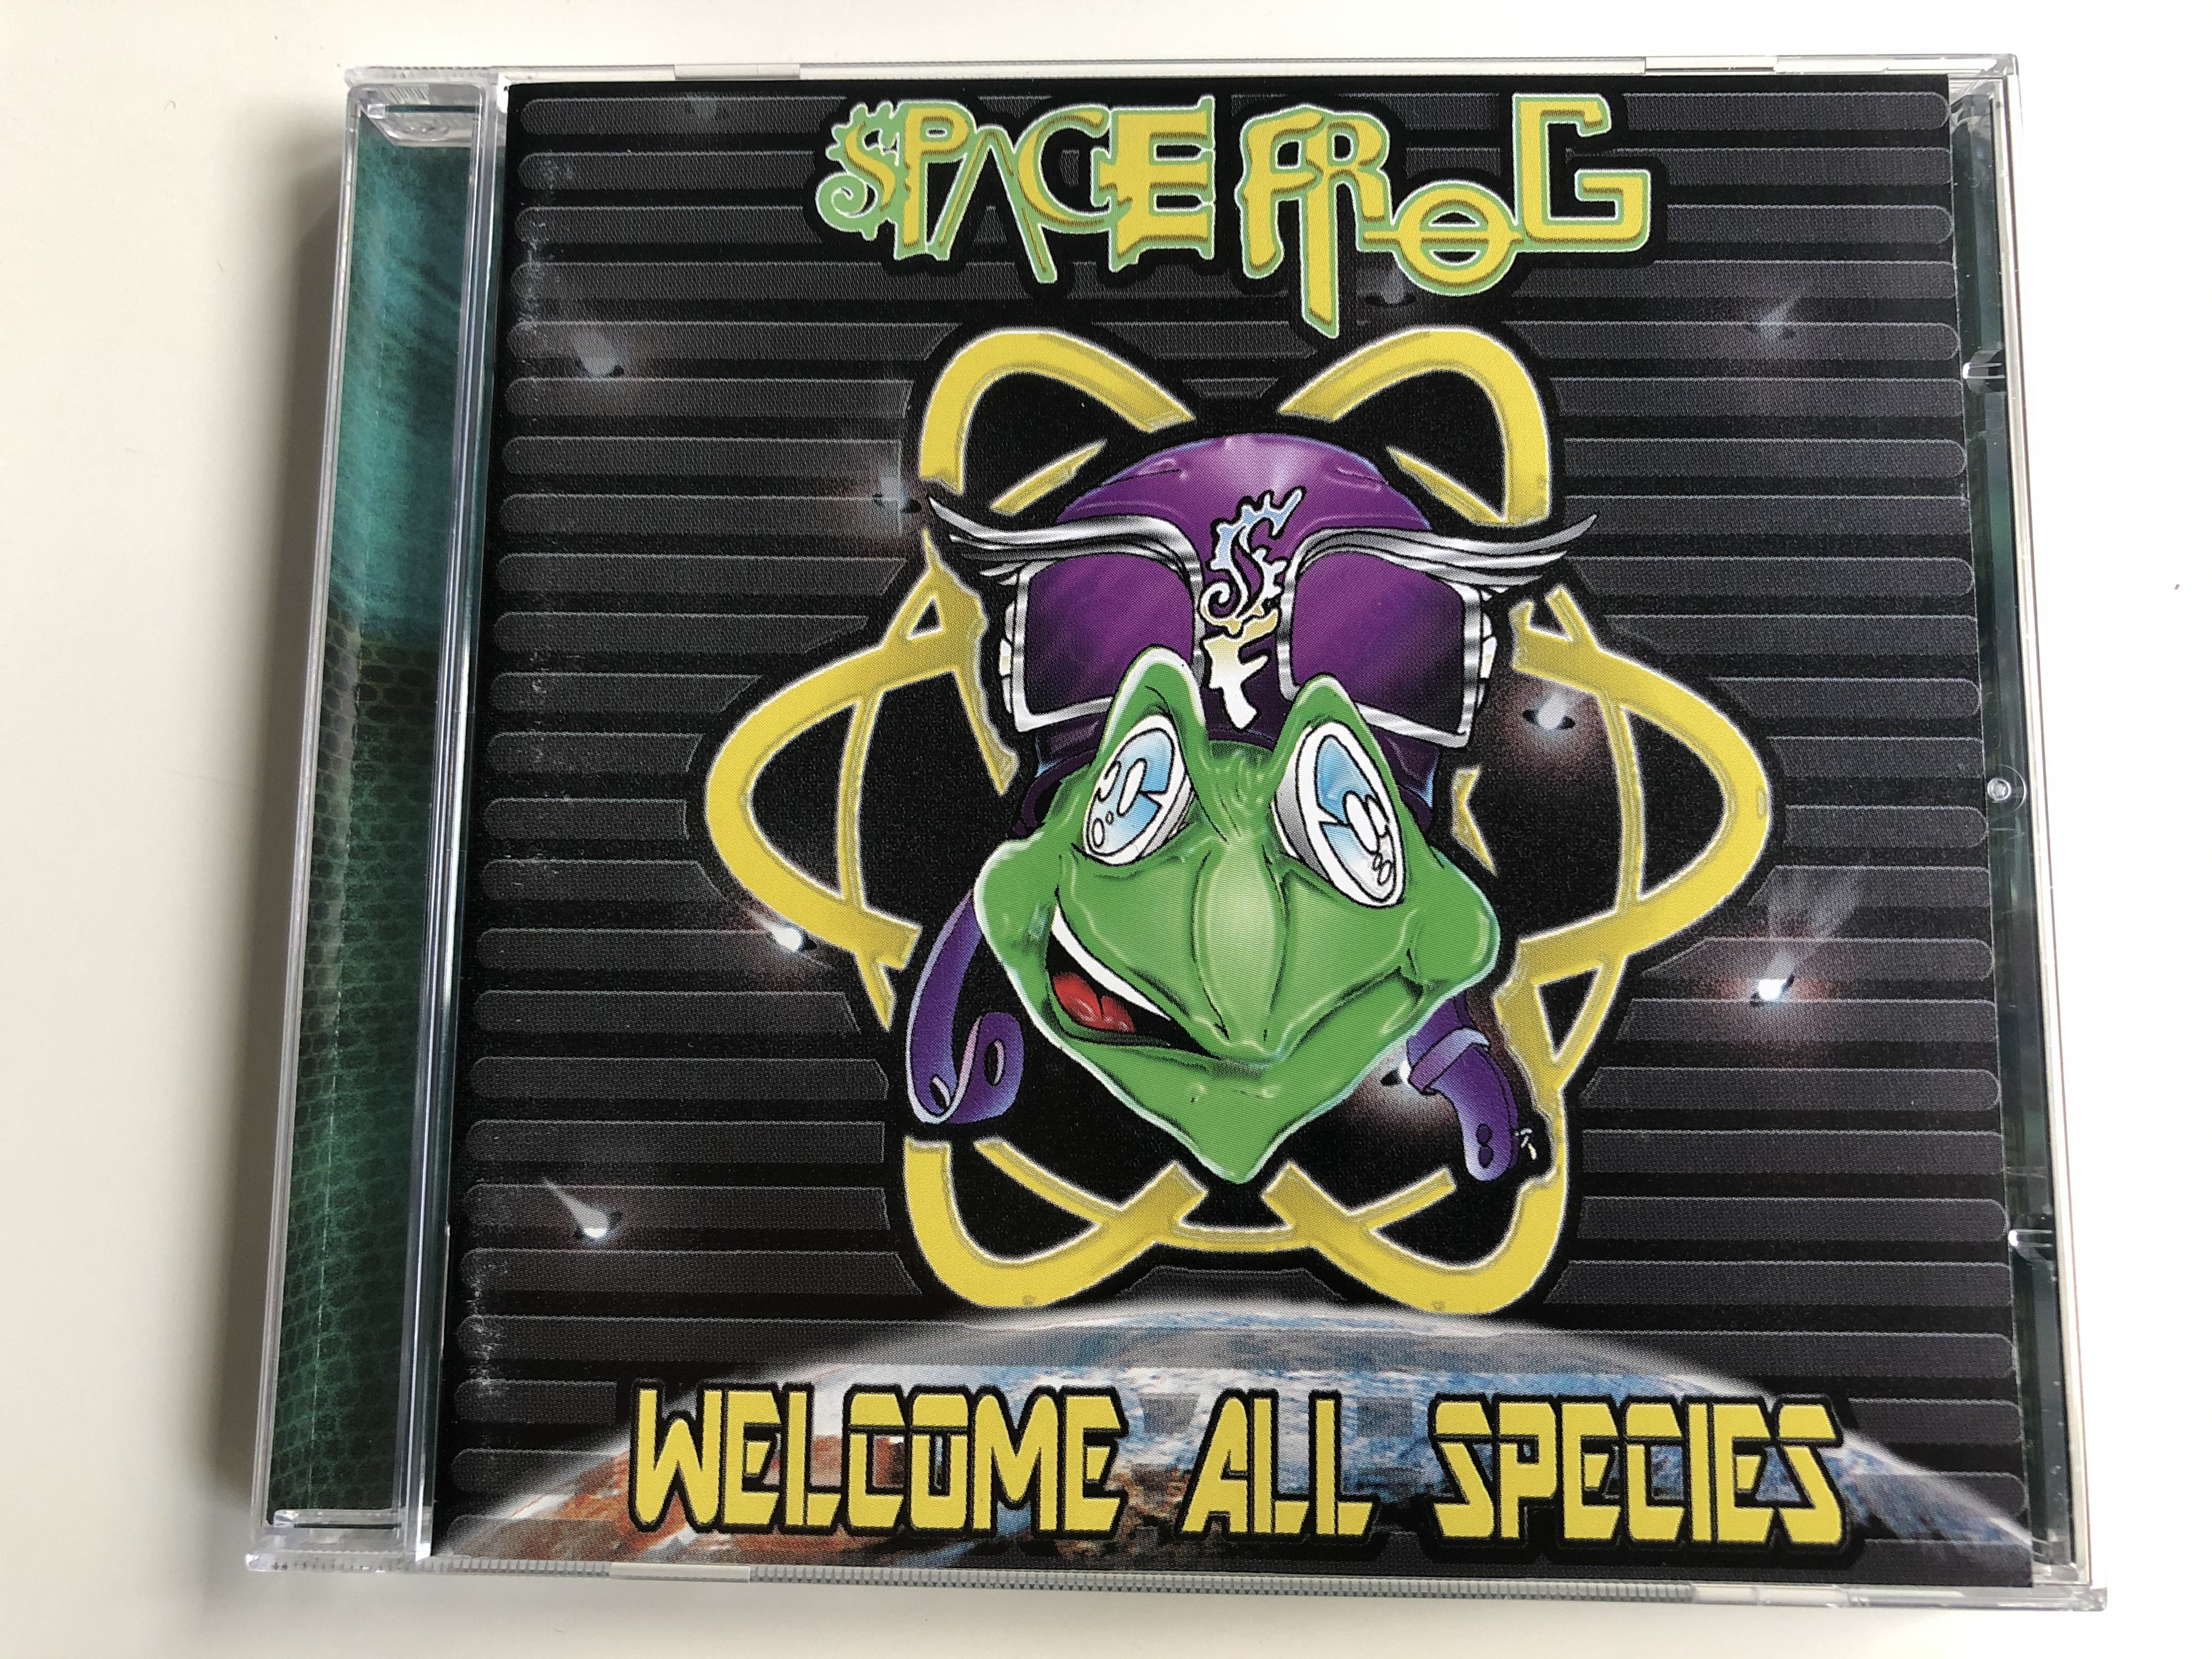 space-frog-welcome-all-species-dance-pool-audio-cd-1998-489023-2-1-.jpg